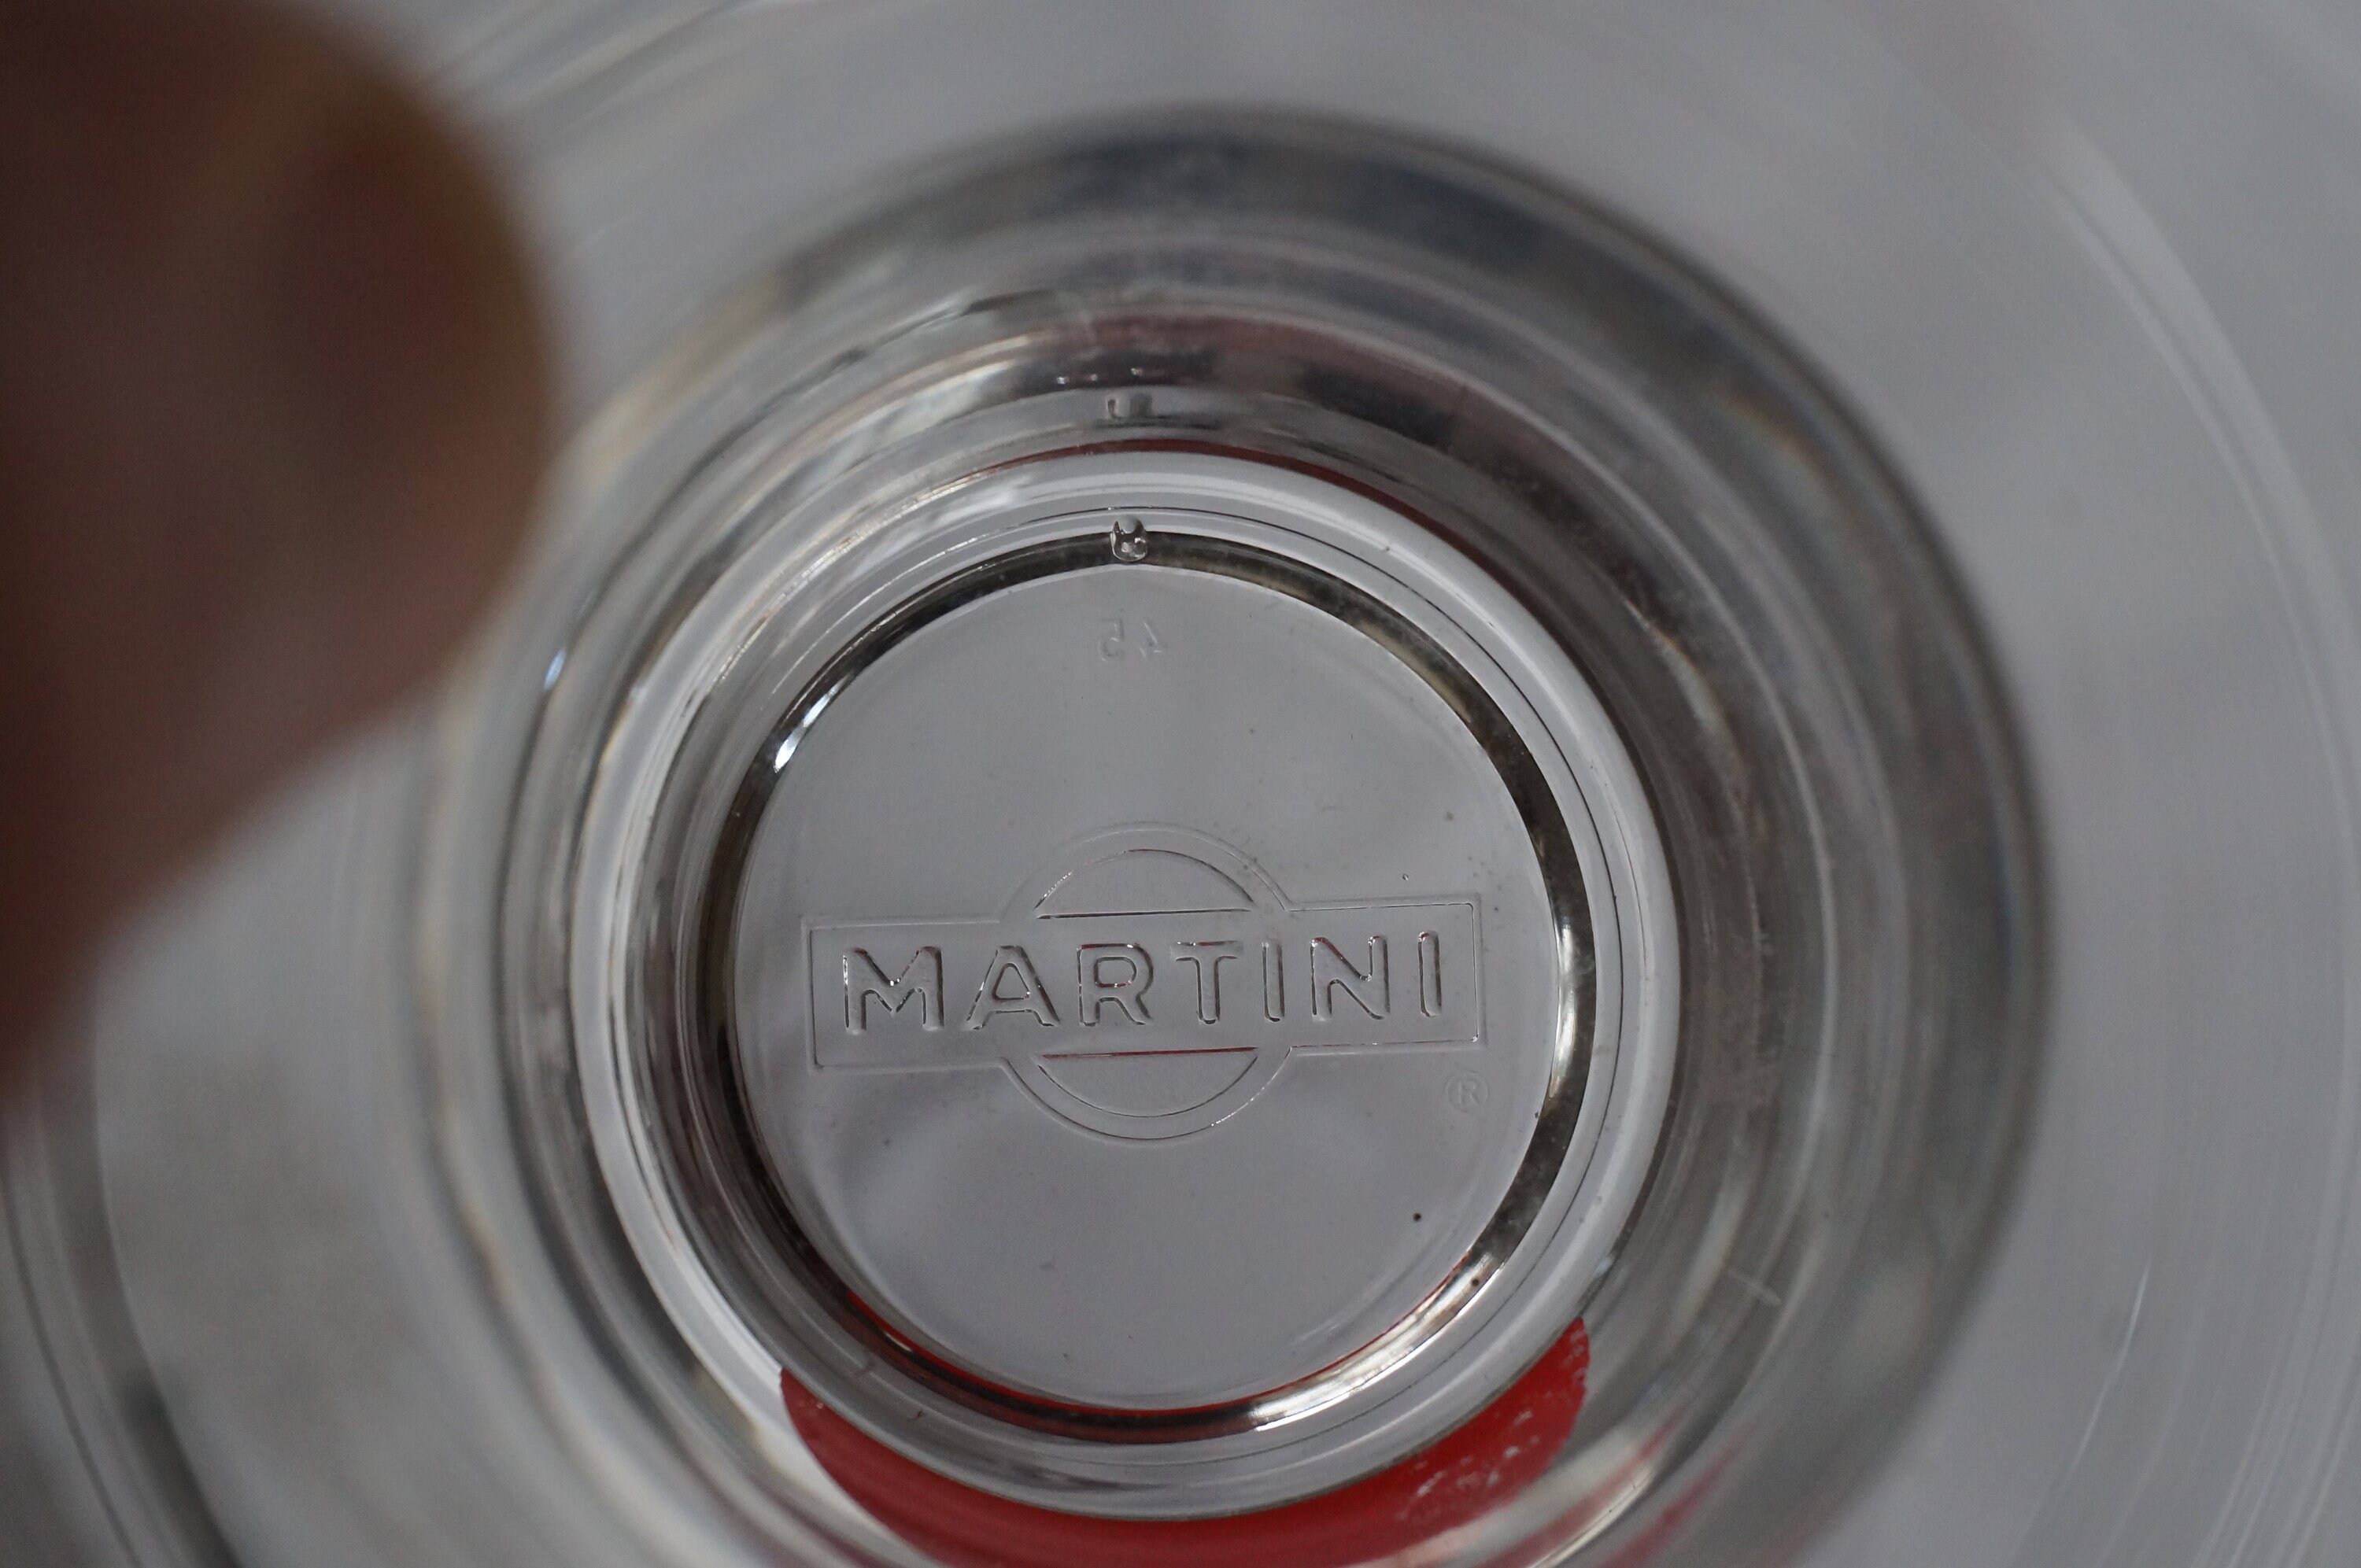 Rossi Martini Barware Collection – Brouk & Co